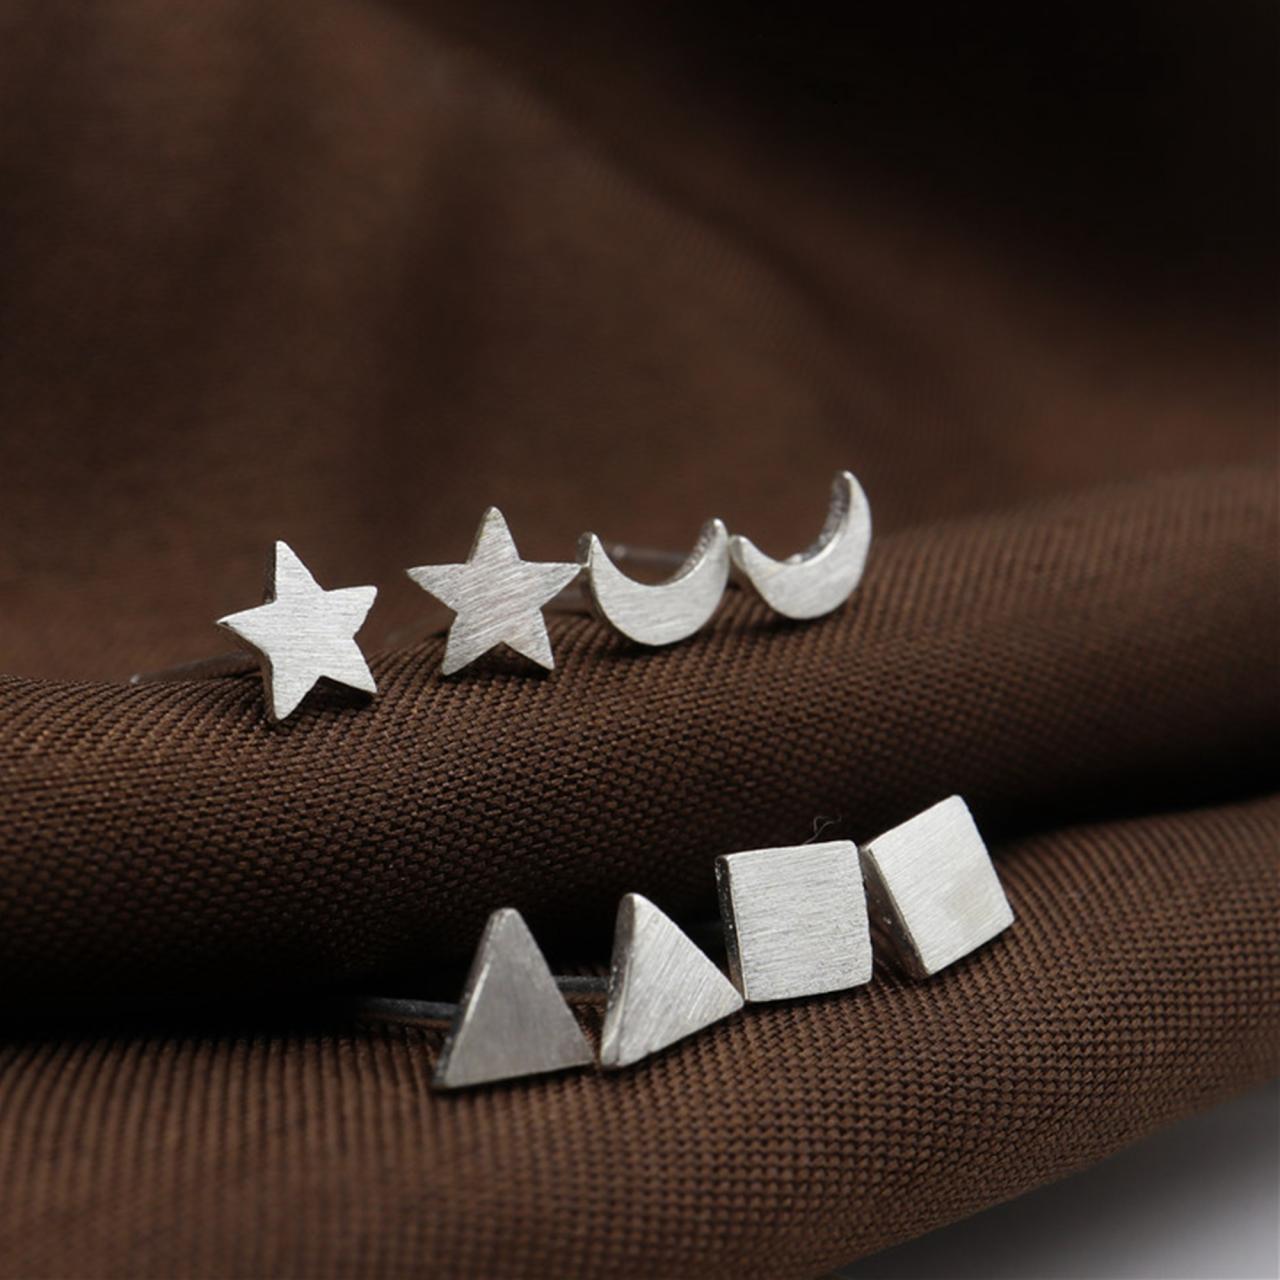 Sterling Silver Filigree Geometric Ear Post, Triangle Earrings Stud, Square Earring Post, Moon Ear Stud, Star Earrings